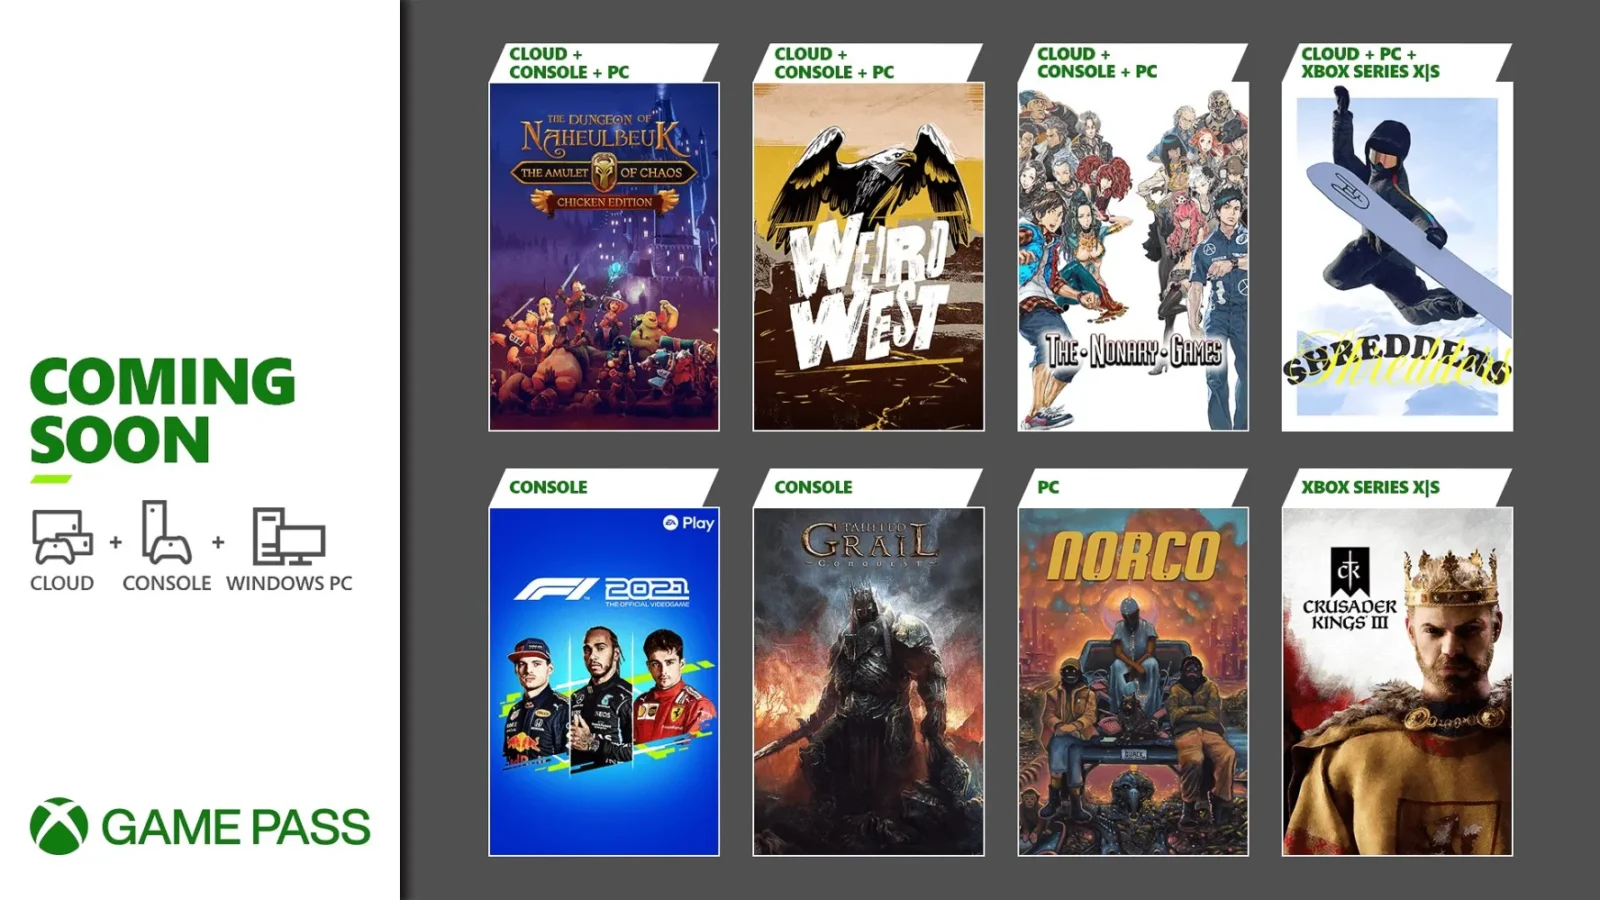 Xbox Game Pass: todos os jogos grátis de março de 2022